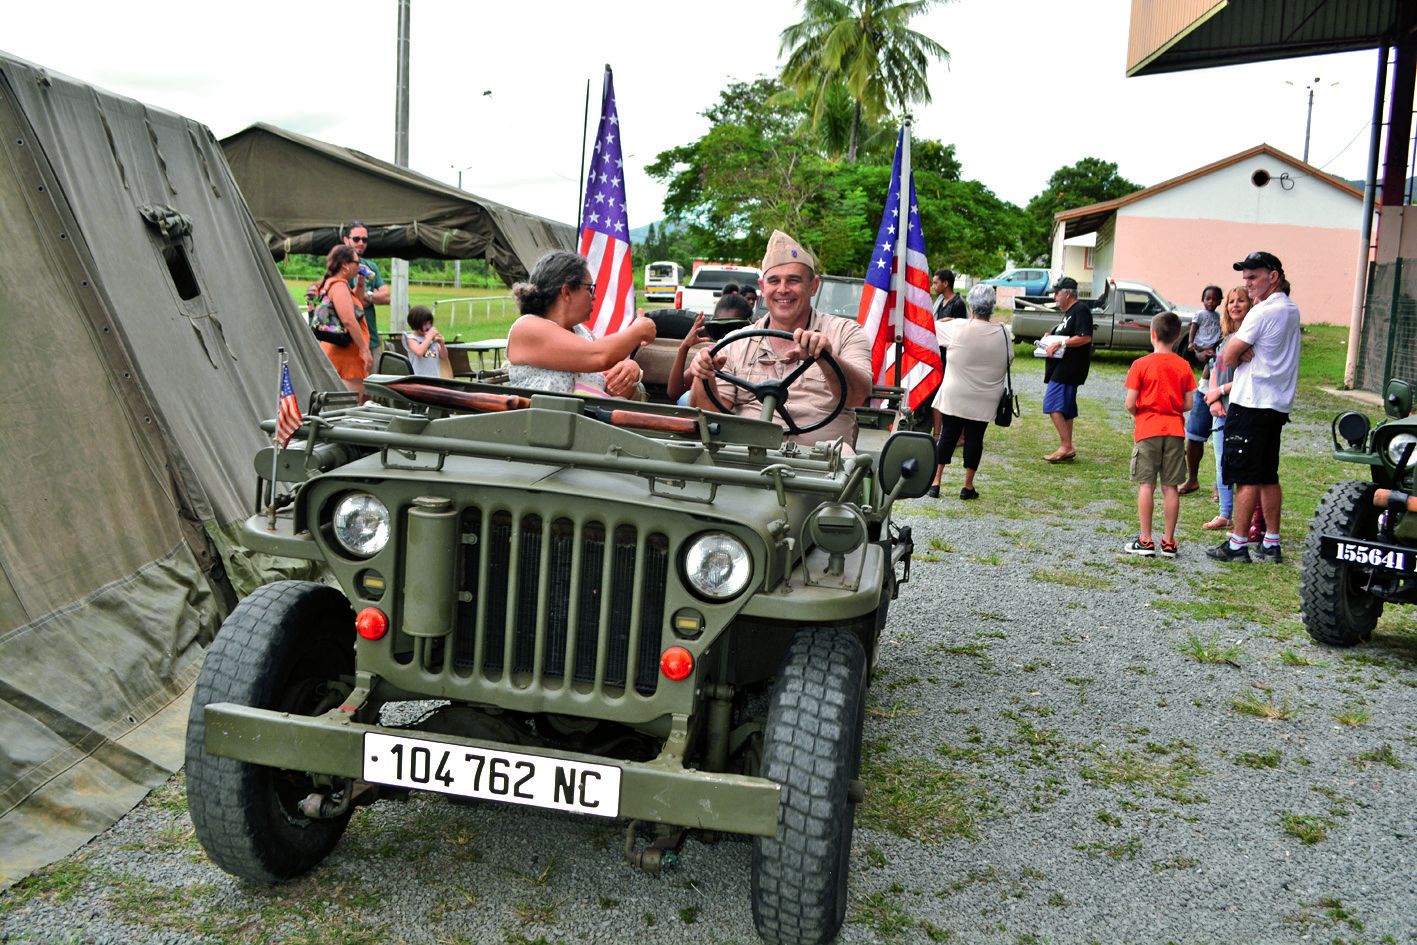 Durant toute la journée, grâce aux bénévoles de l’association du Jeep Army club, le public a pu faire des tours à bord de la mythique jeep américaine. Que du bonheur pour les anciens comme pour la jeune génération. Cette animation a eu énormément de succè